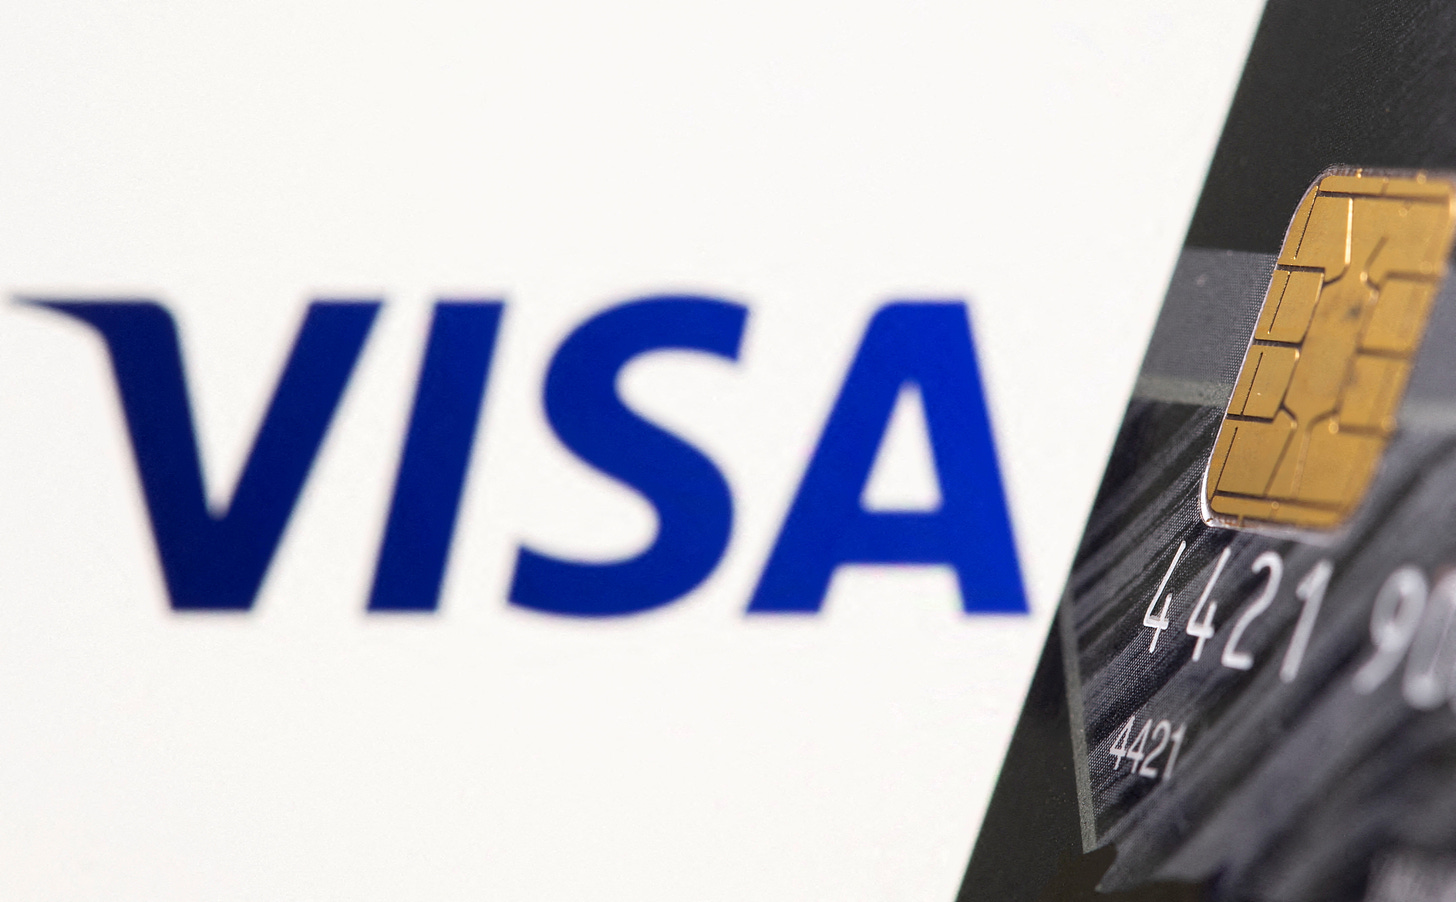 Visa, Mastercard suspend operations in Russia over Ukraine invasion |  Reuters